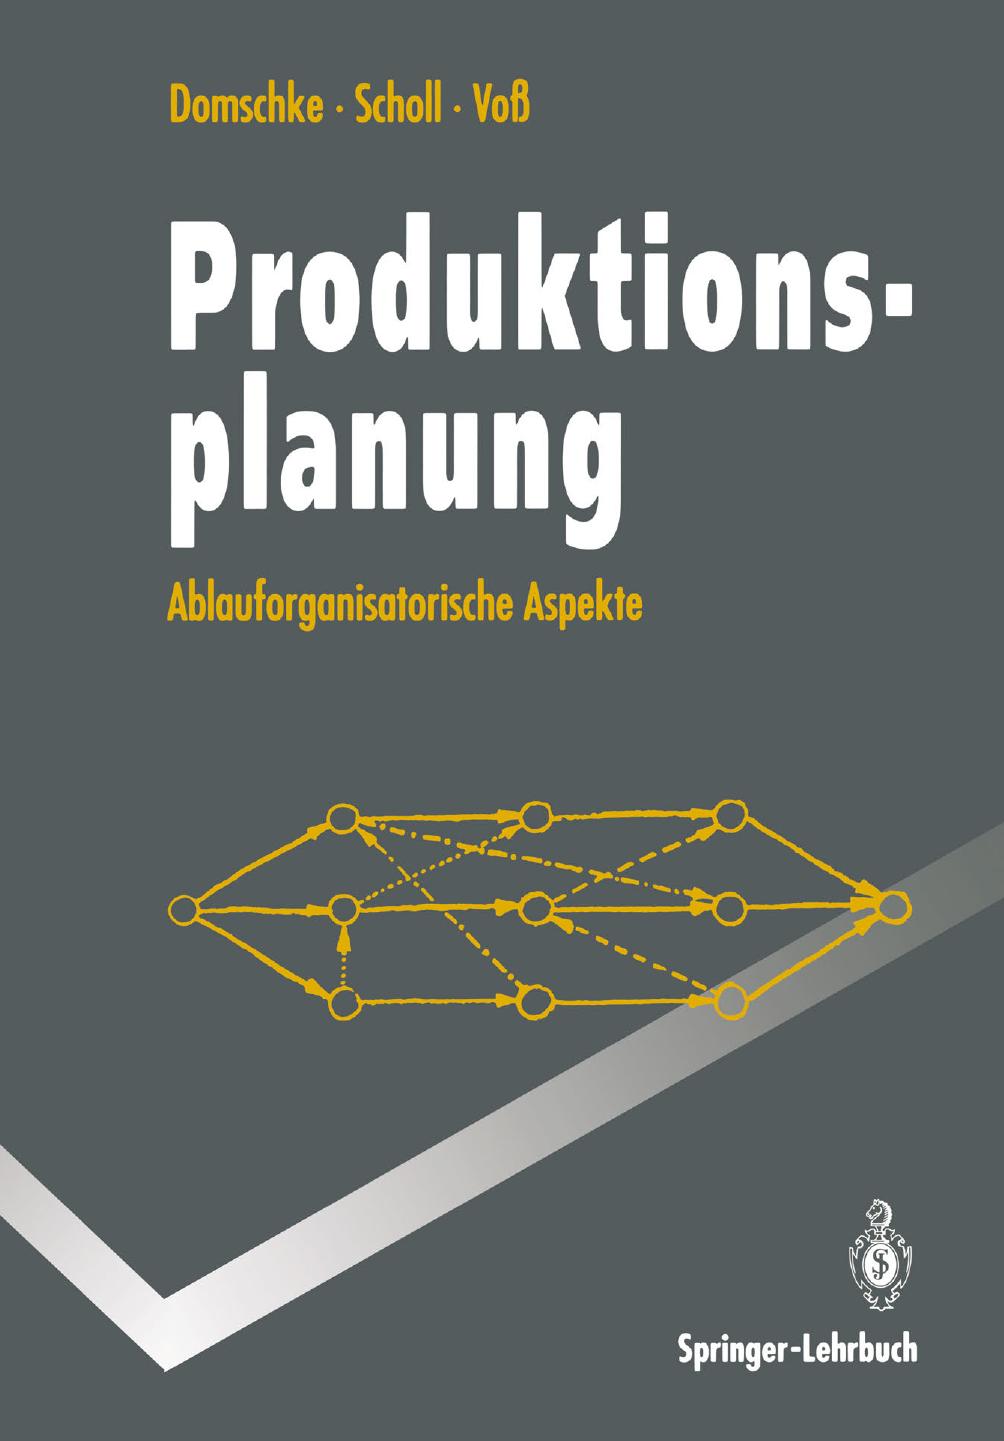 Produktionsplanung: ablauforganisatorische Aspekte